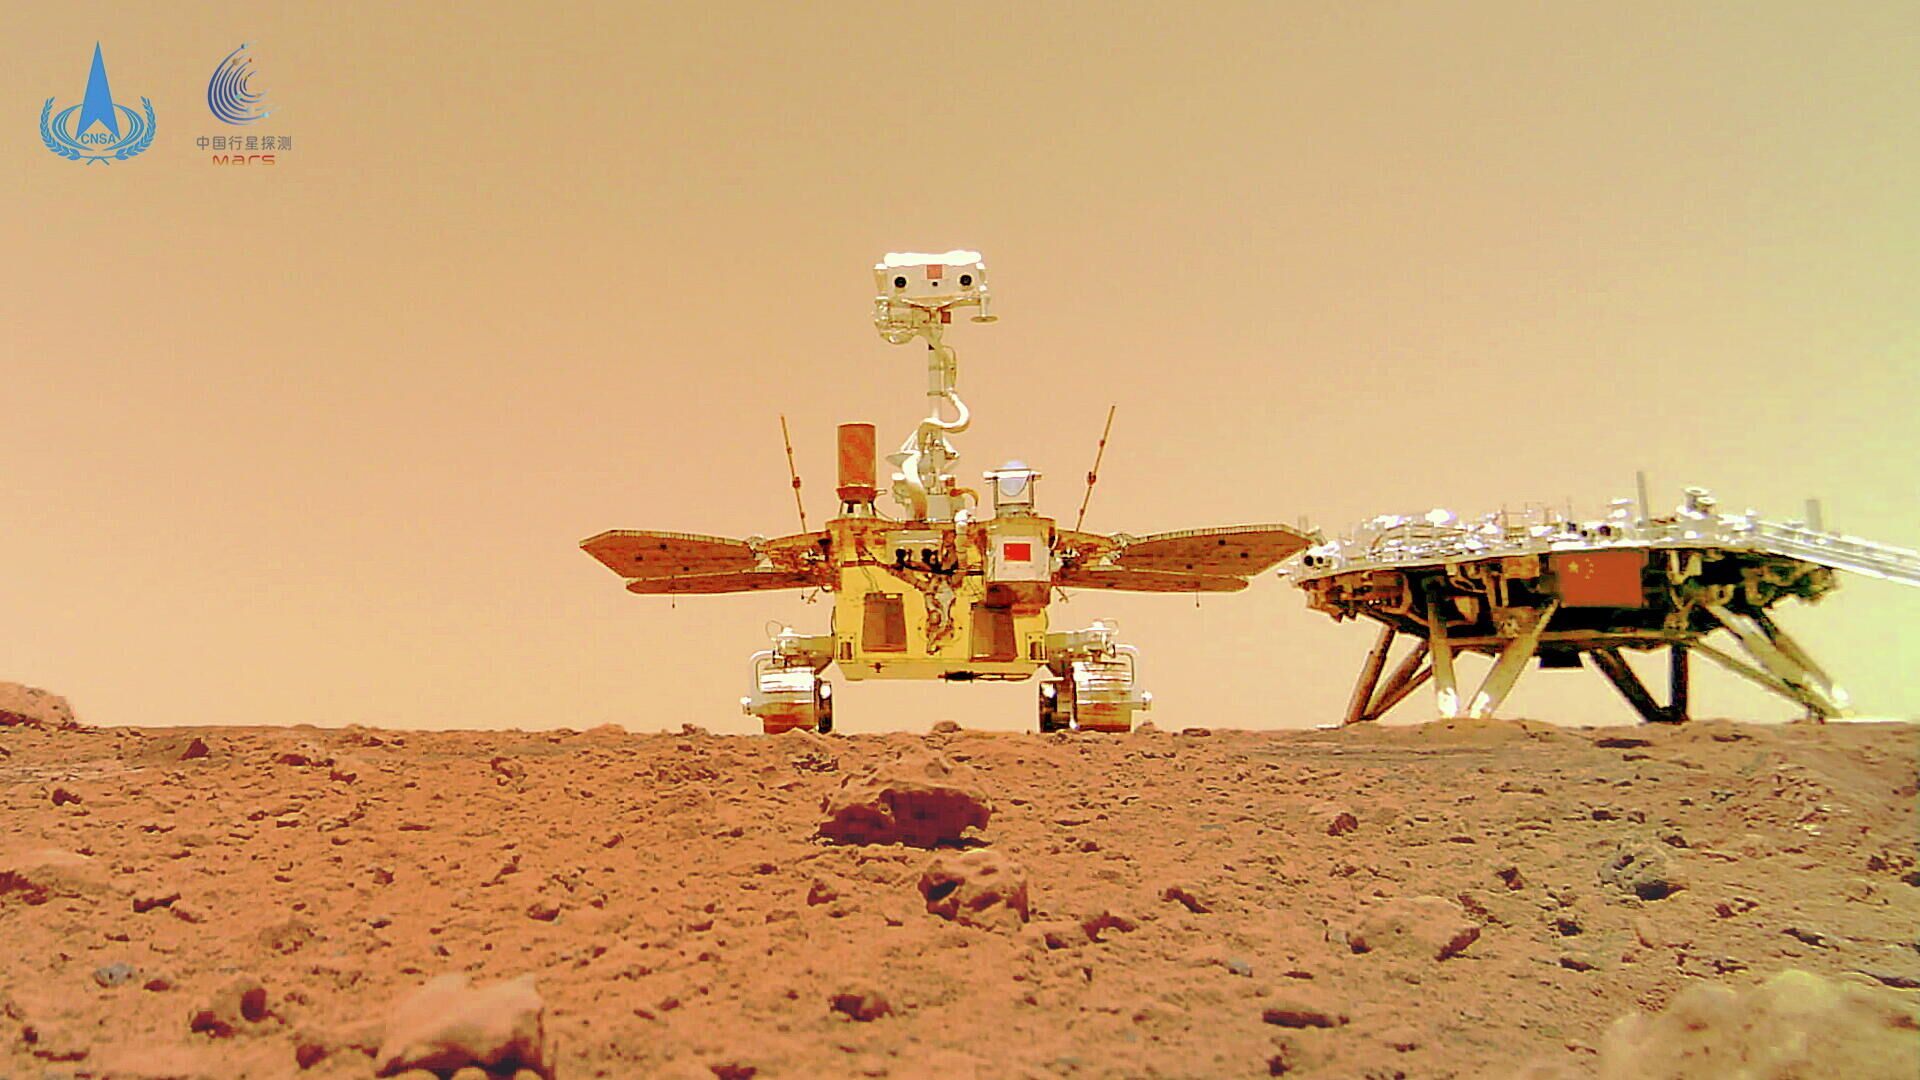 Китайский марсоход Чжужун и посадочный модуль миссии Тяньвэнь-1 на поверхности Марса. 11 июня 2021 - РИА Новости, 1920, 11.06.2021